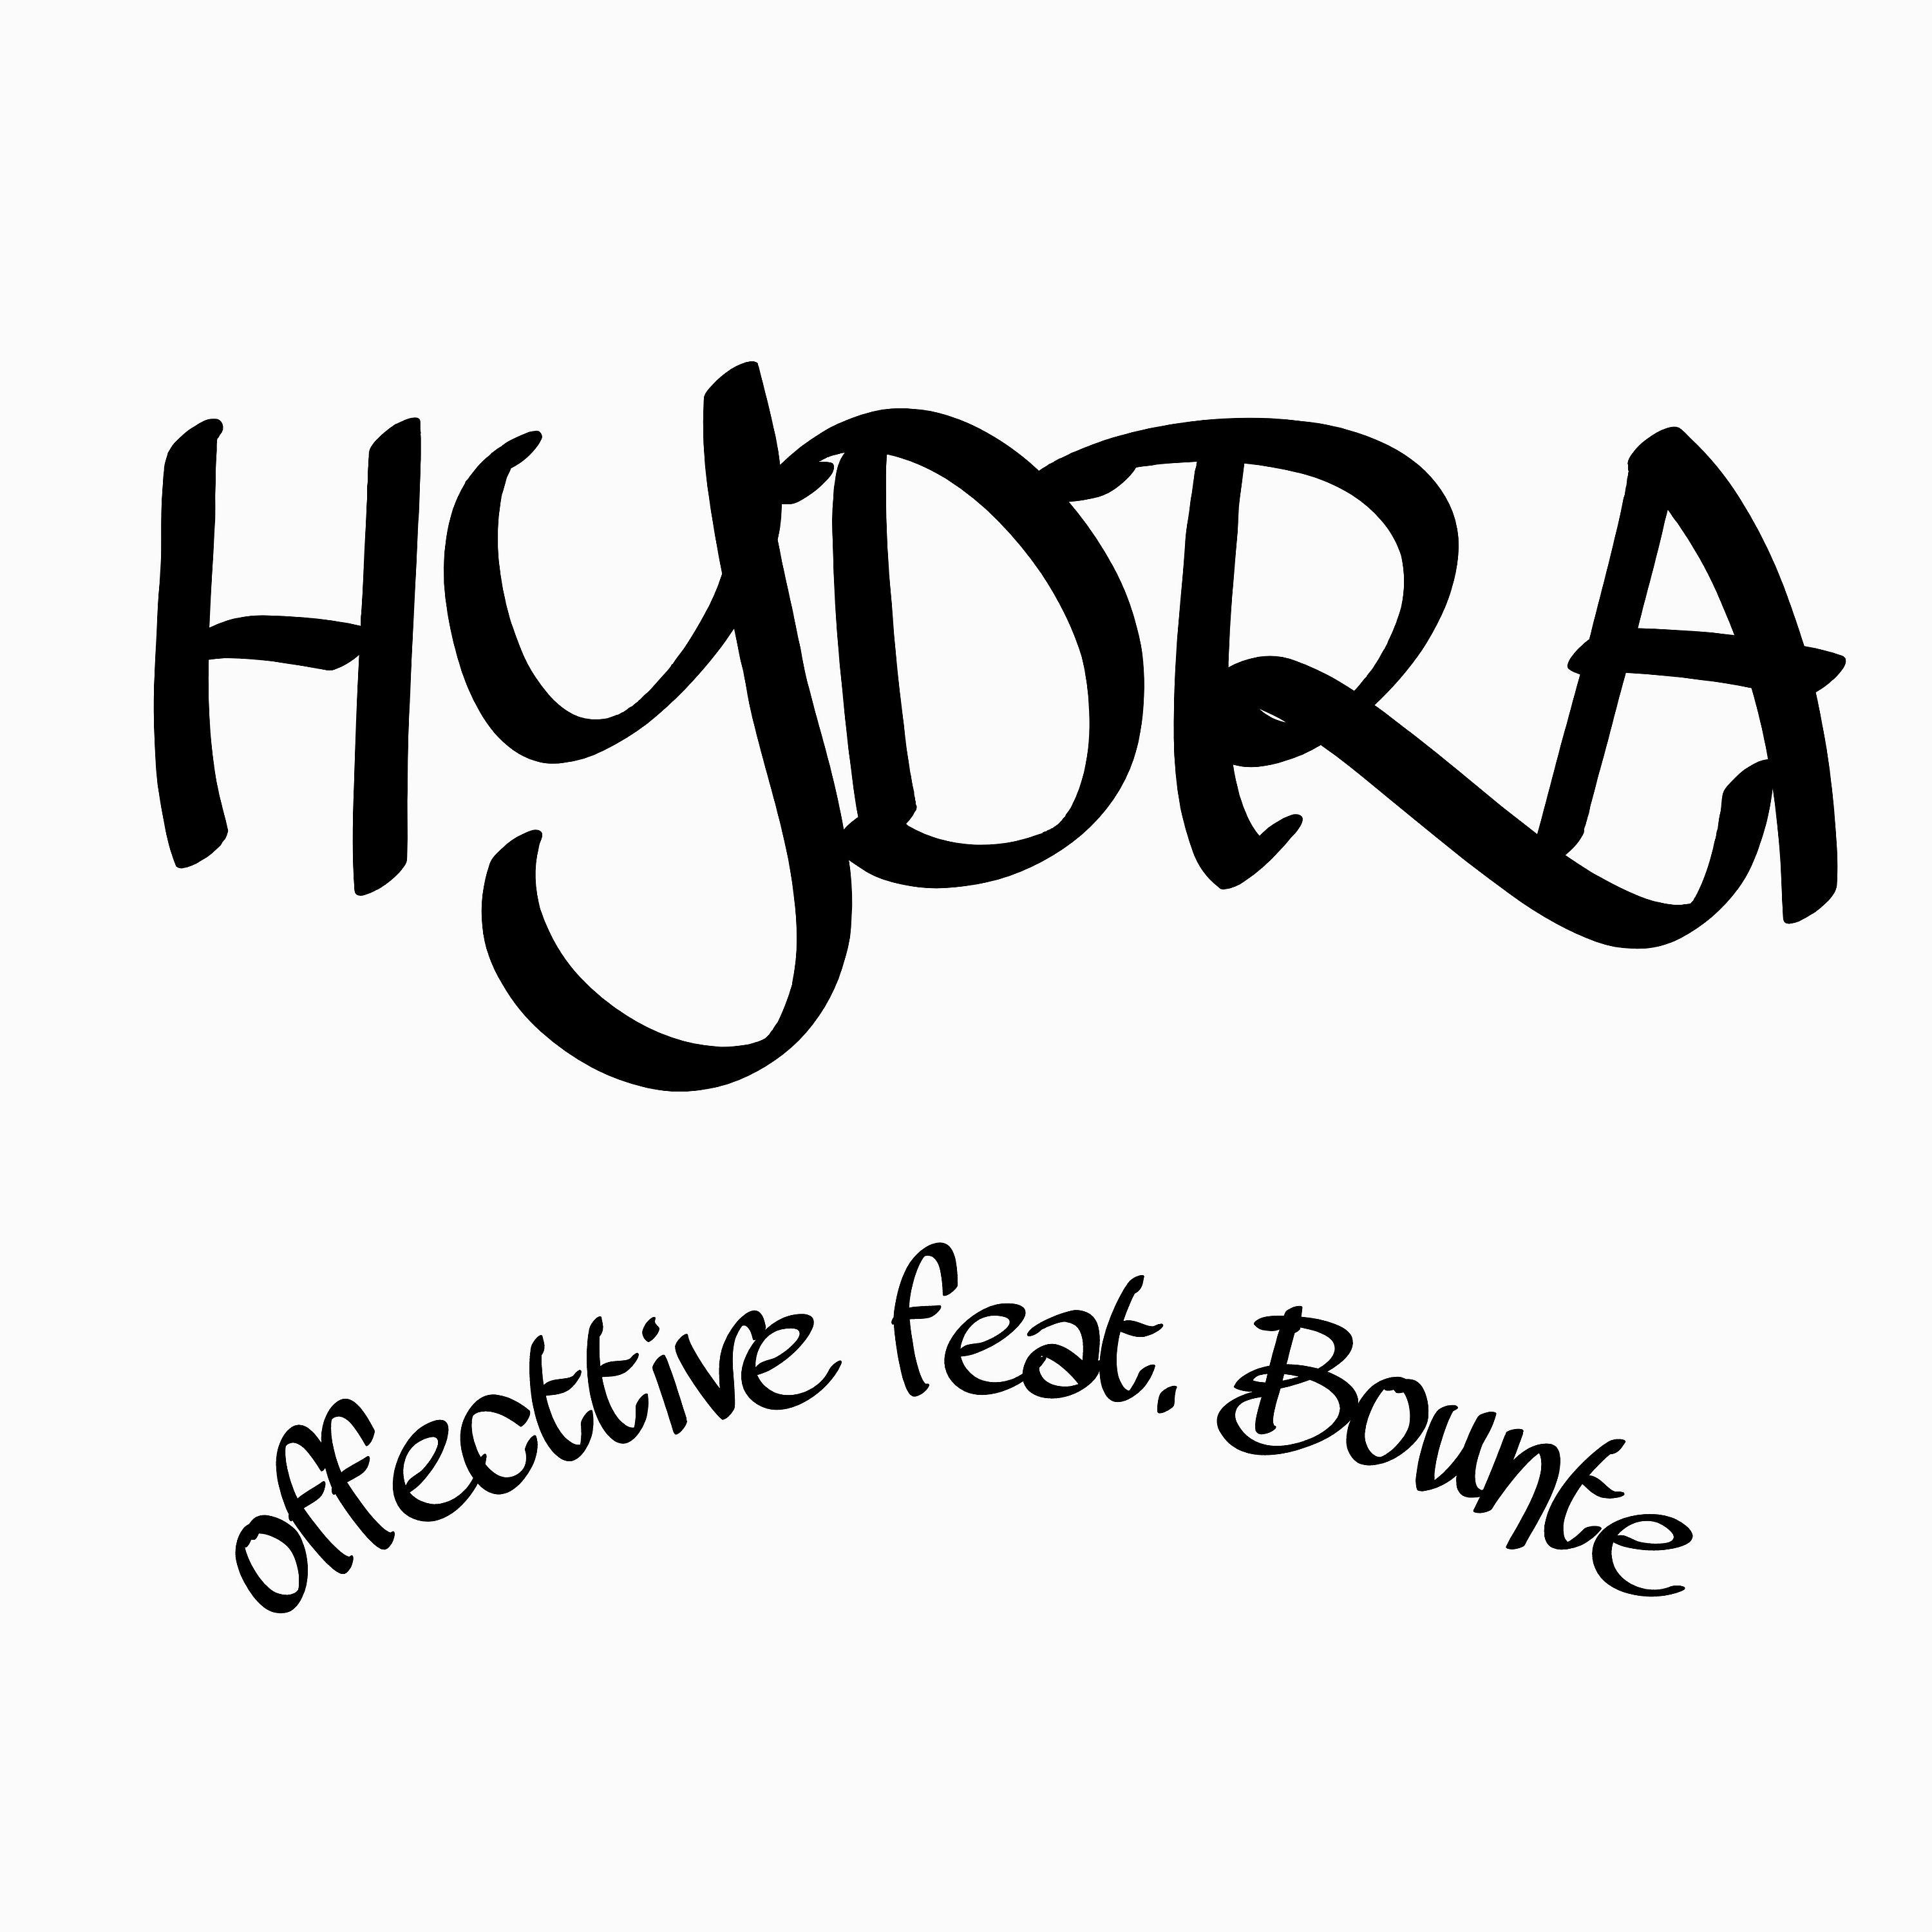 Постер альбома Hydra